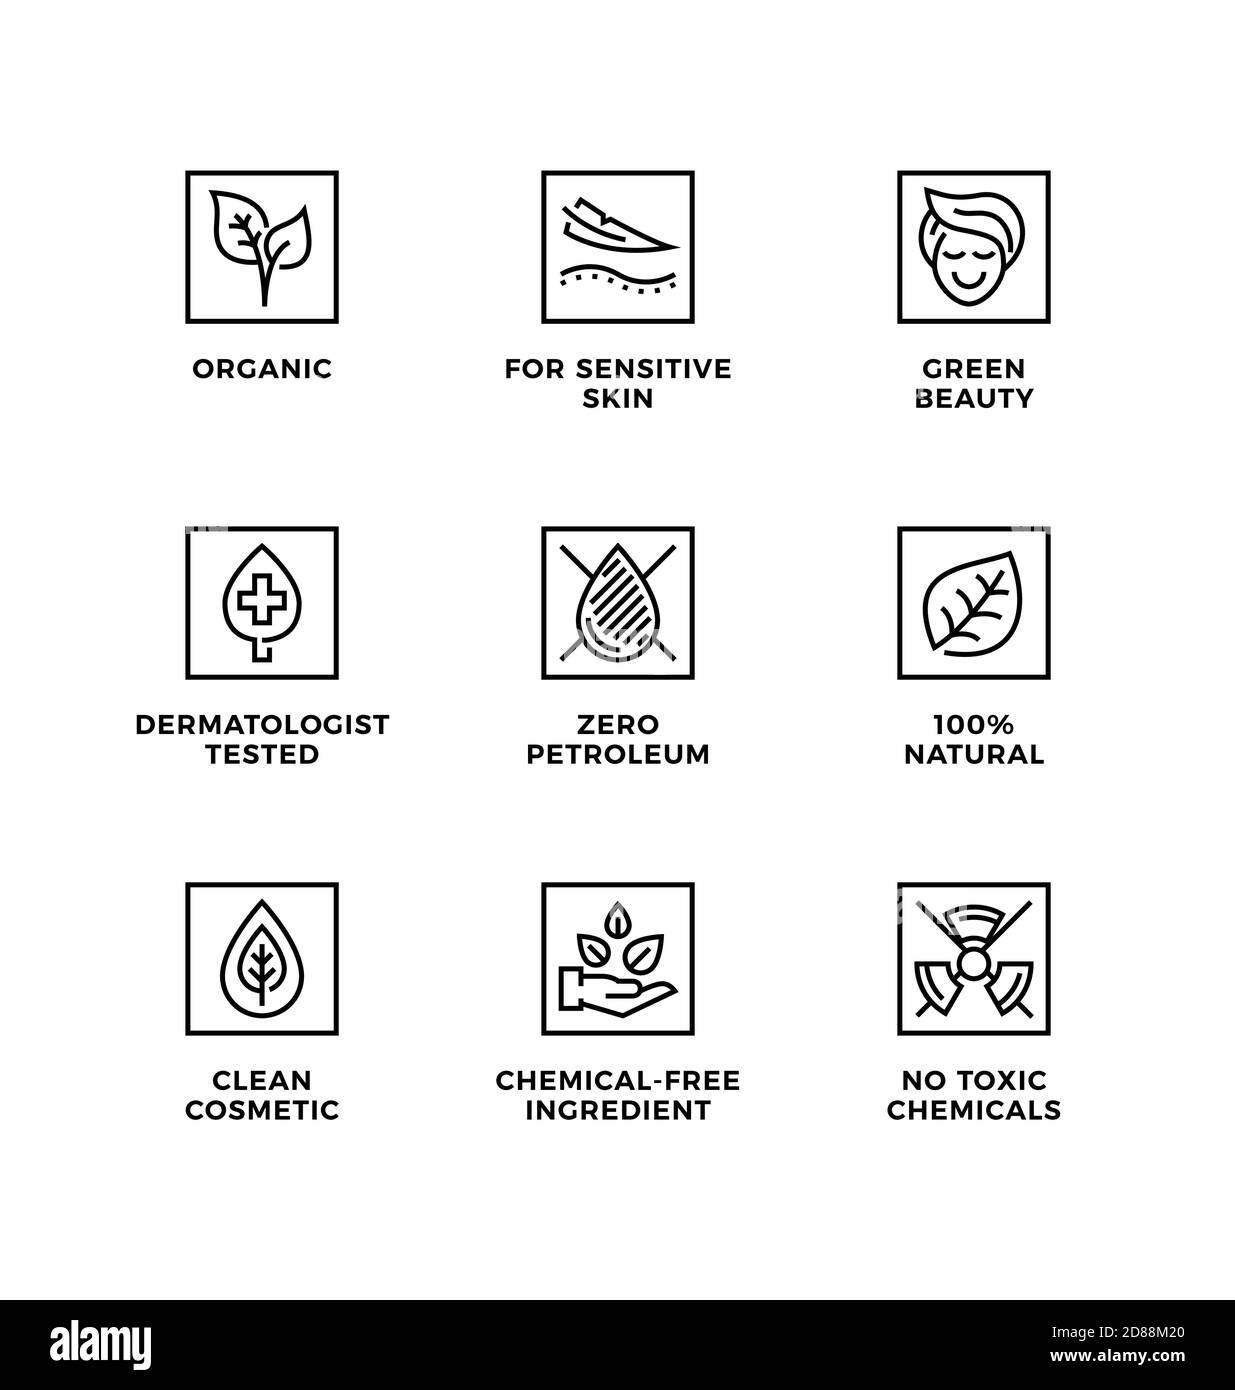 Vektor-Set von Design-Elementen, Logo-Design-Vorlage, Icons und Abzeichen für natürliche und organische Kosmetik. Liniensymbole gesetzt, bearbeitbare Kontur. Stock Vektor